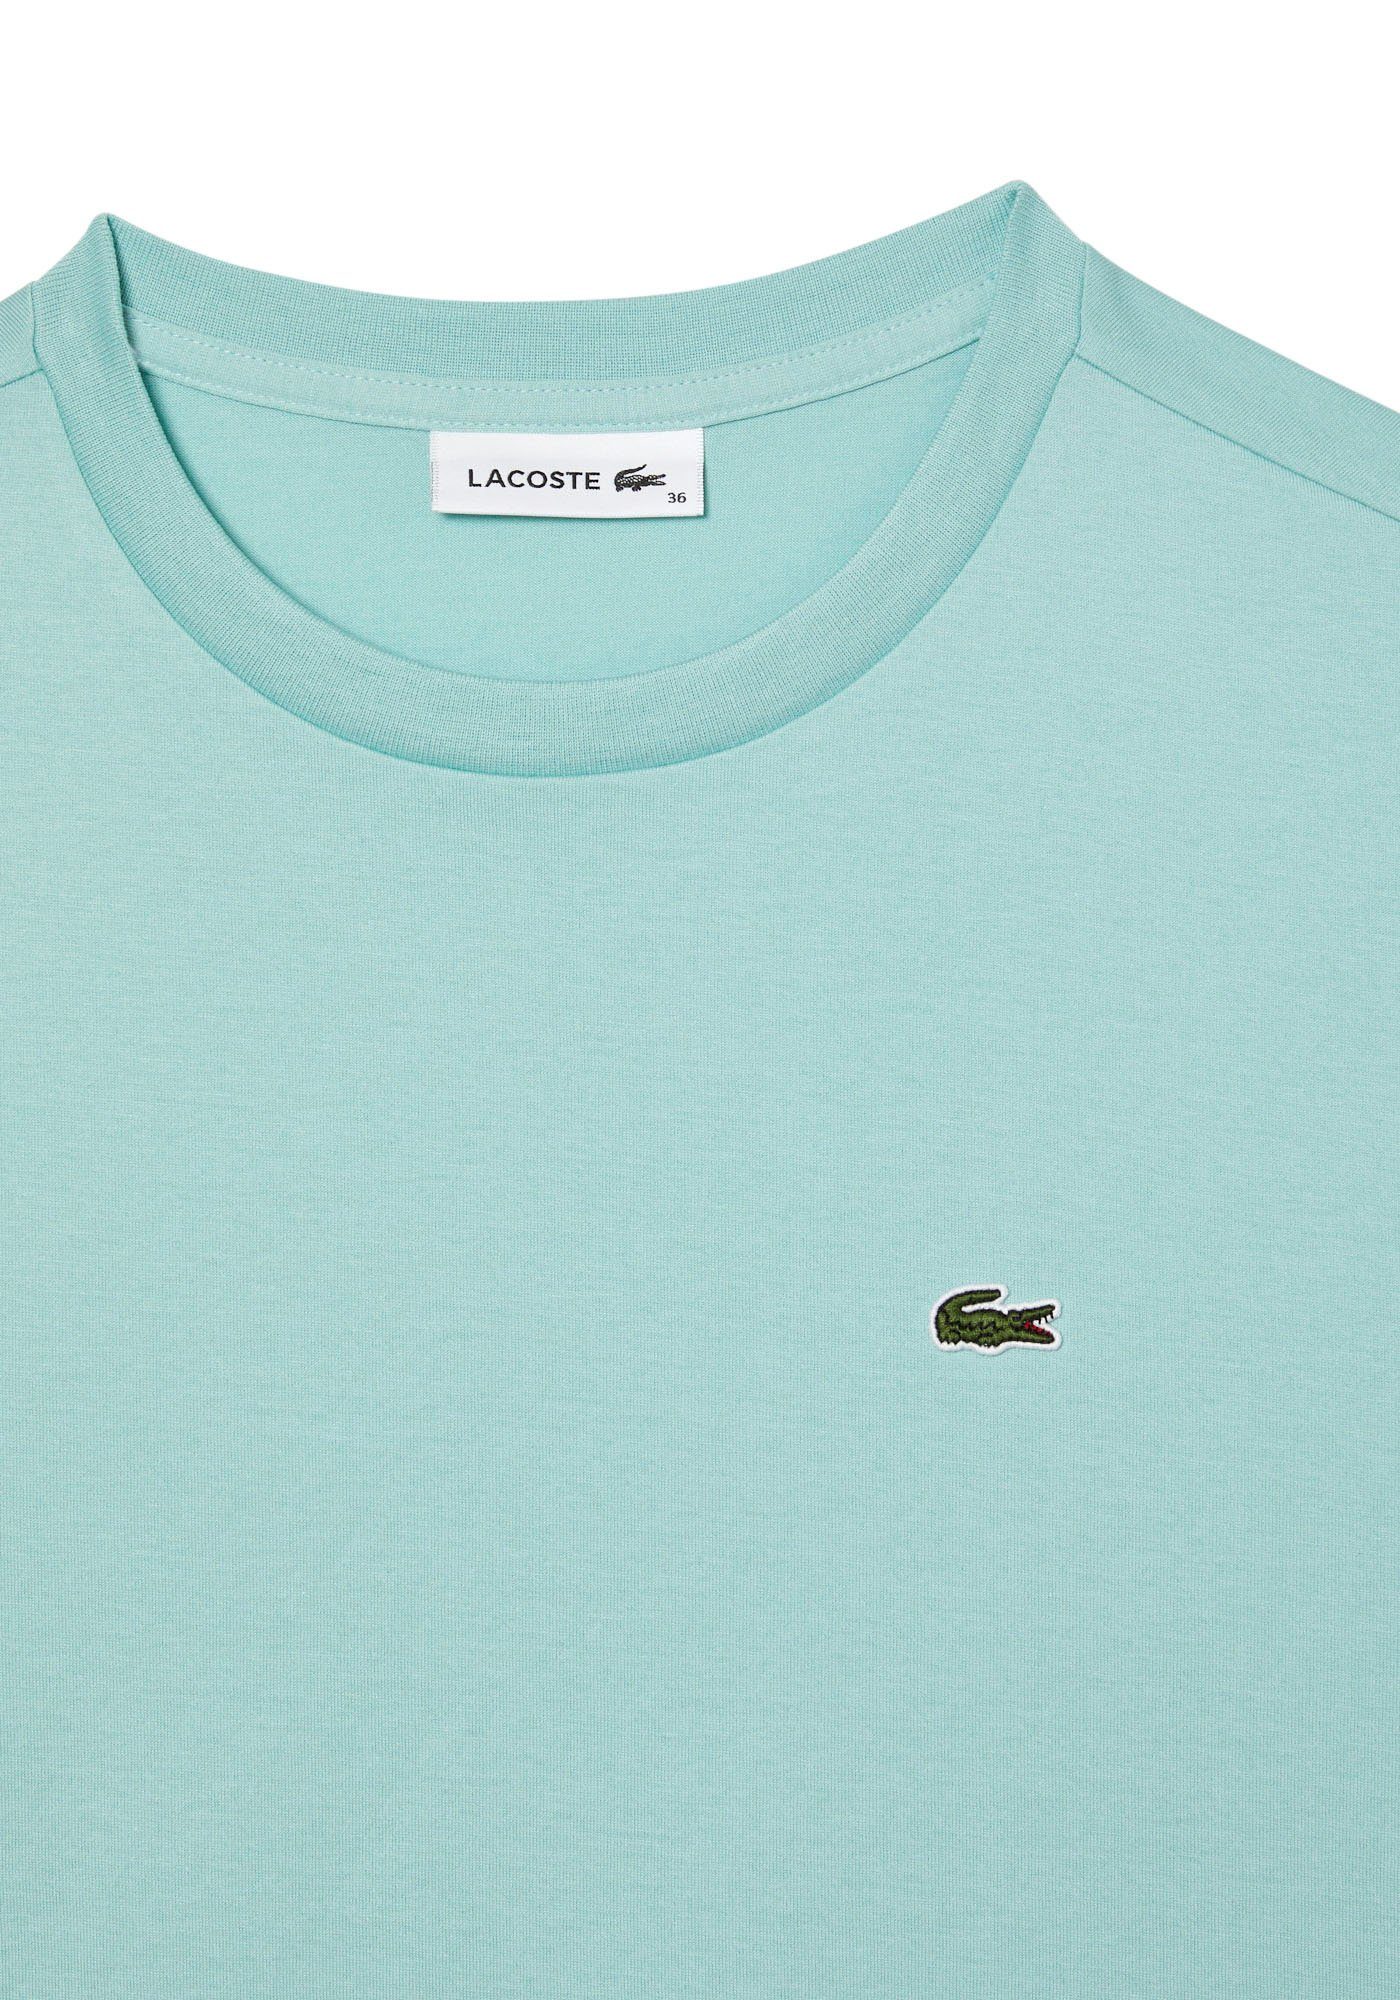 Lacoste-Logo (1-tlg) mit Lacoste der T-Shirt Brust mint auf